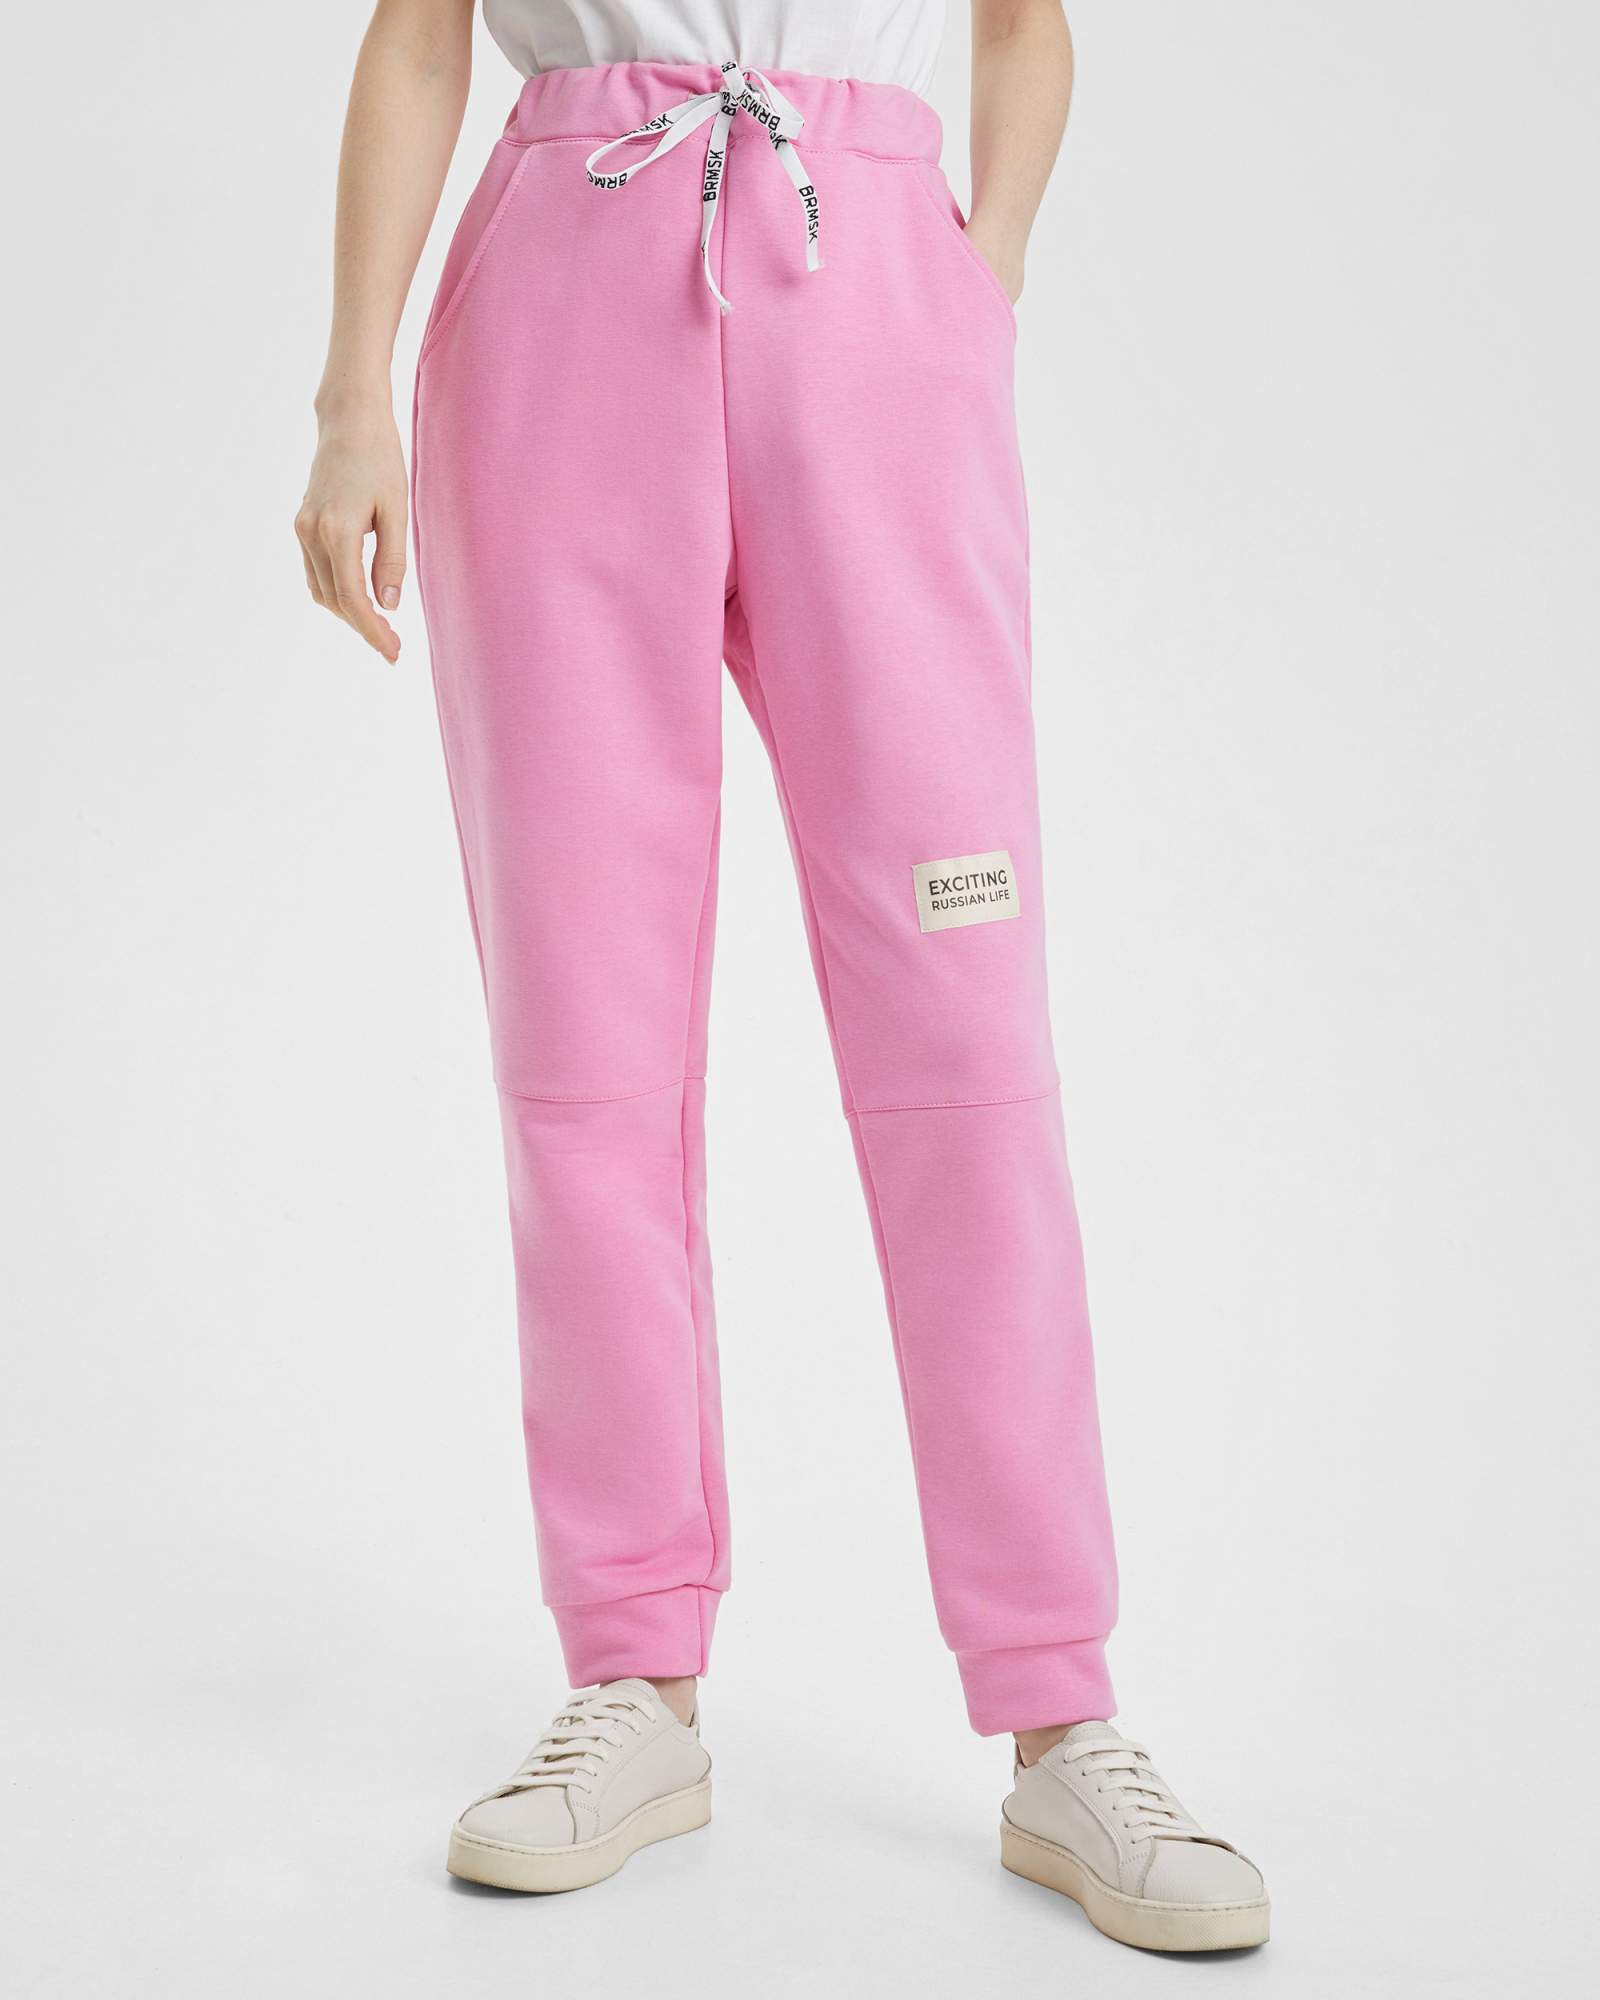 Спортивные брюки женские BARMARISKA с шевроном розовые 40-42 RU